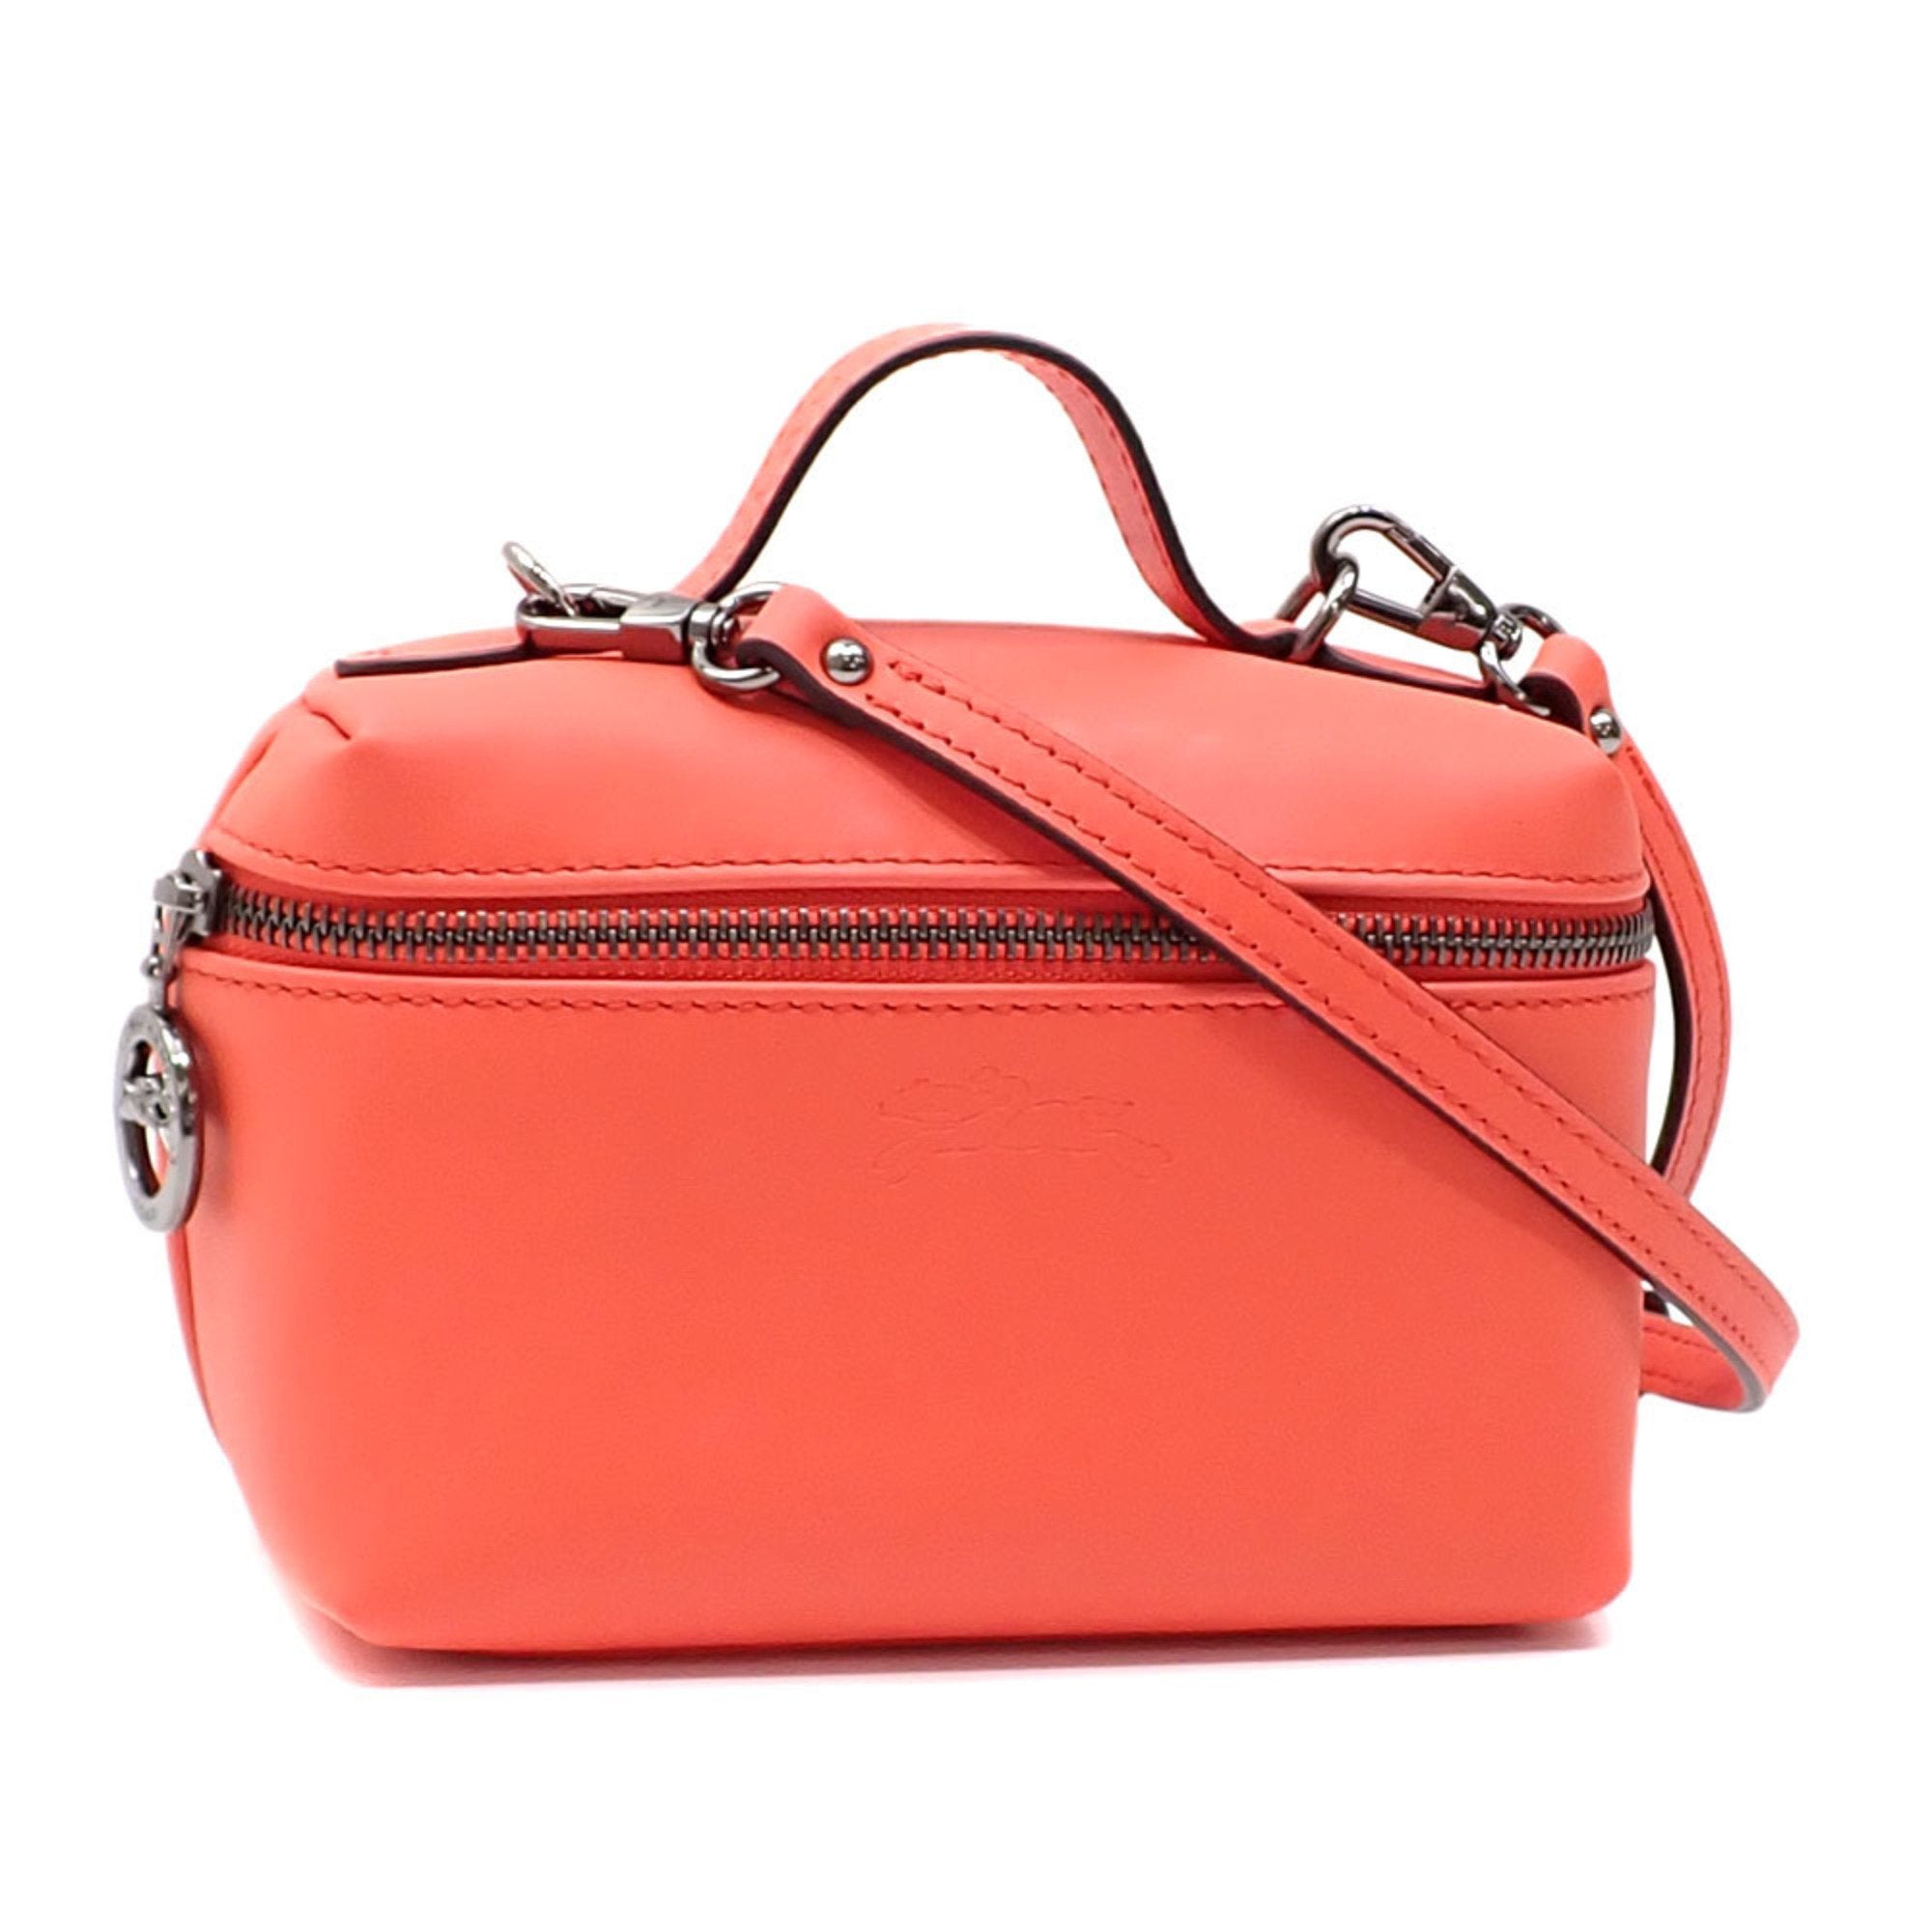 Women's Handbag Orange Leather 10187 987 Shoulder A211953